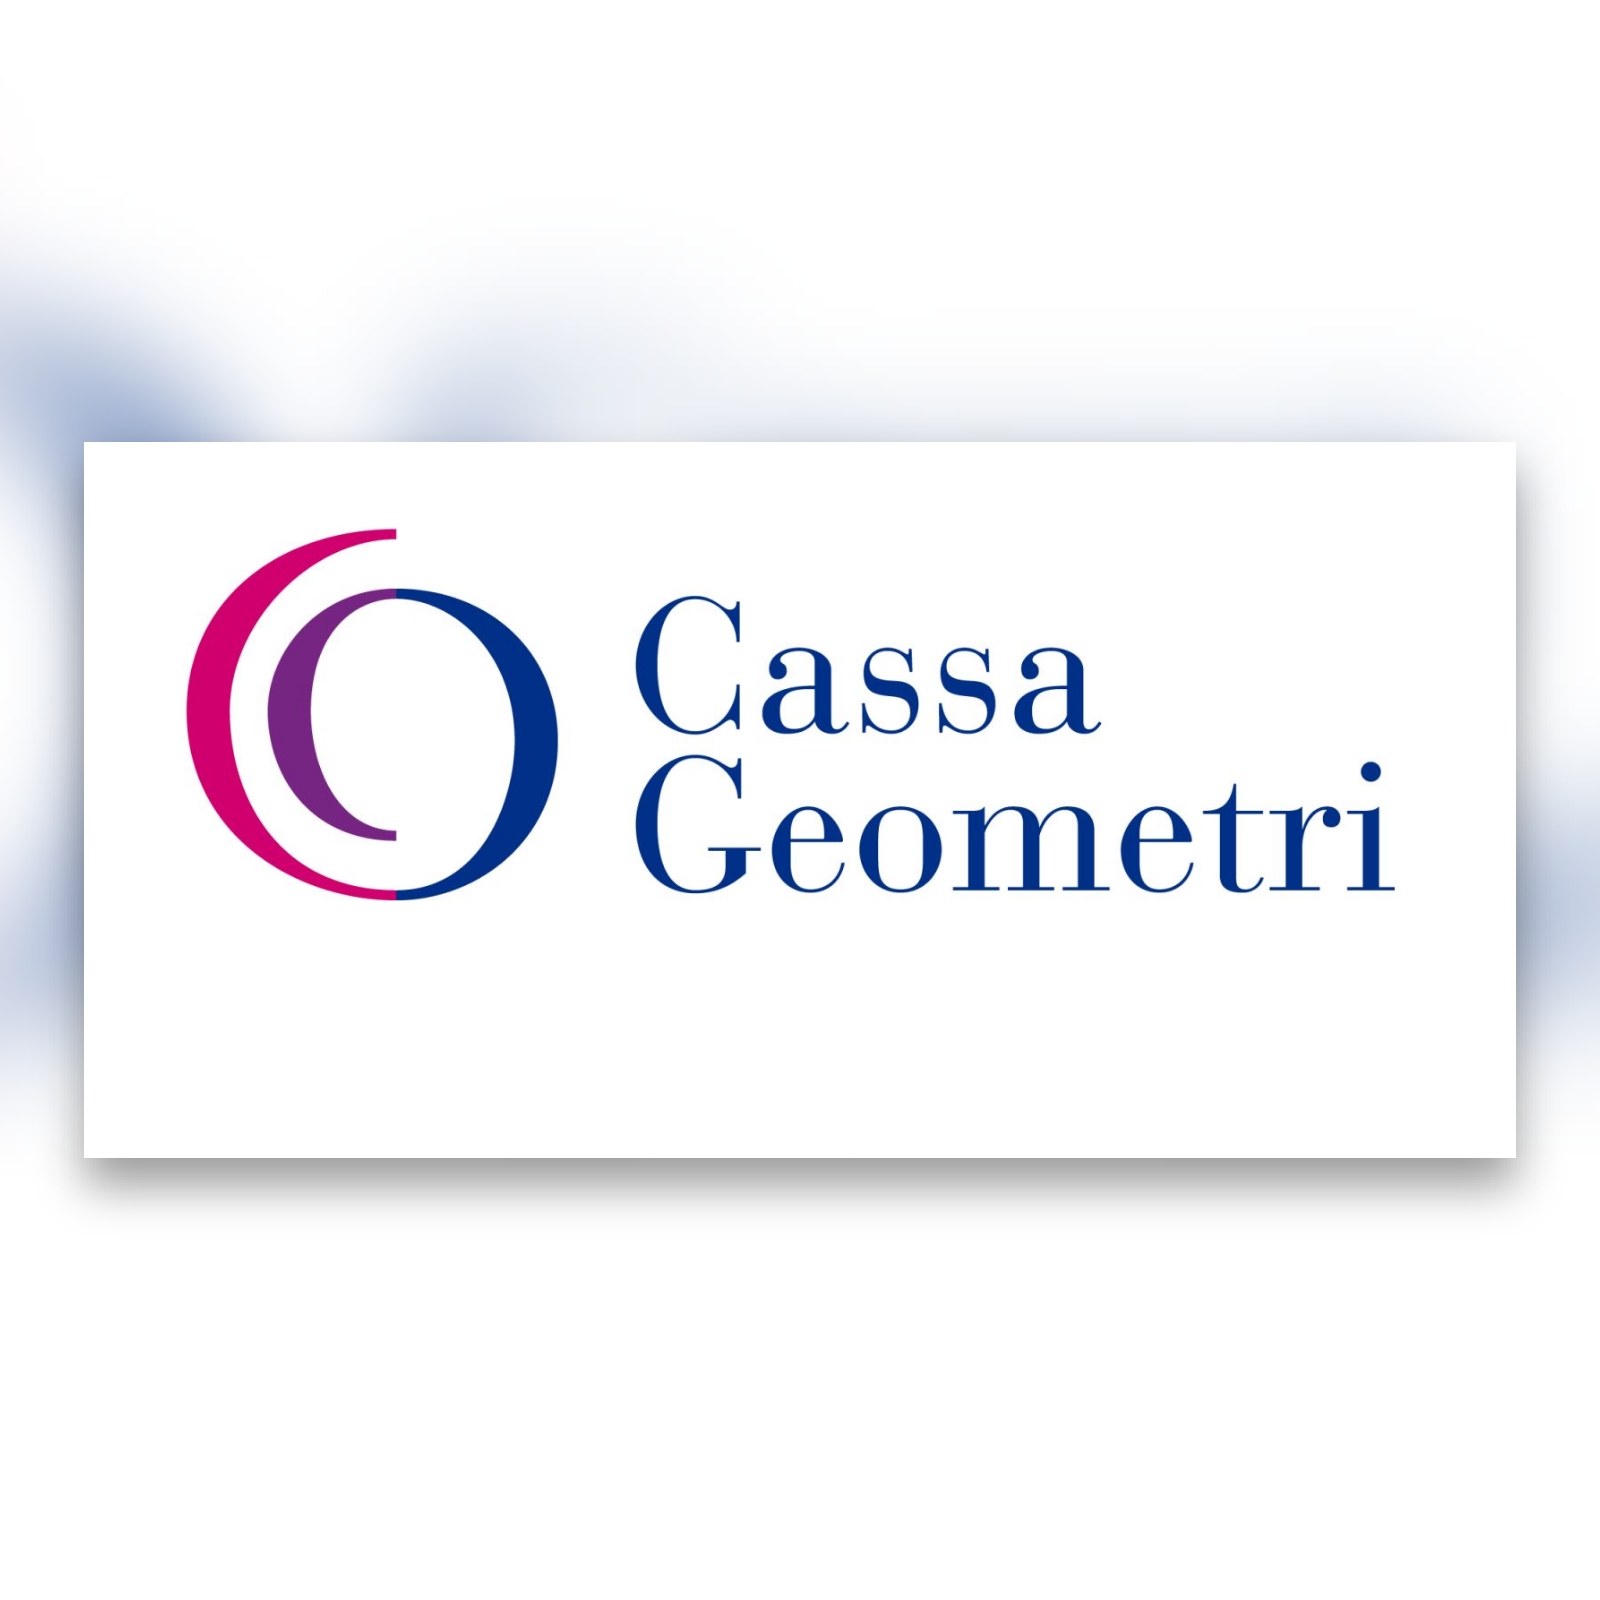 Cassa Geometri: giornata dedicata alla Previdenza - sabato 23 aprile 2022